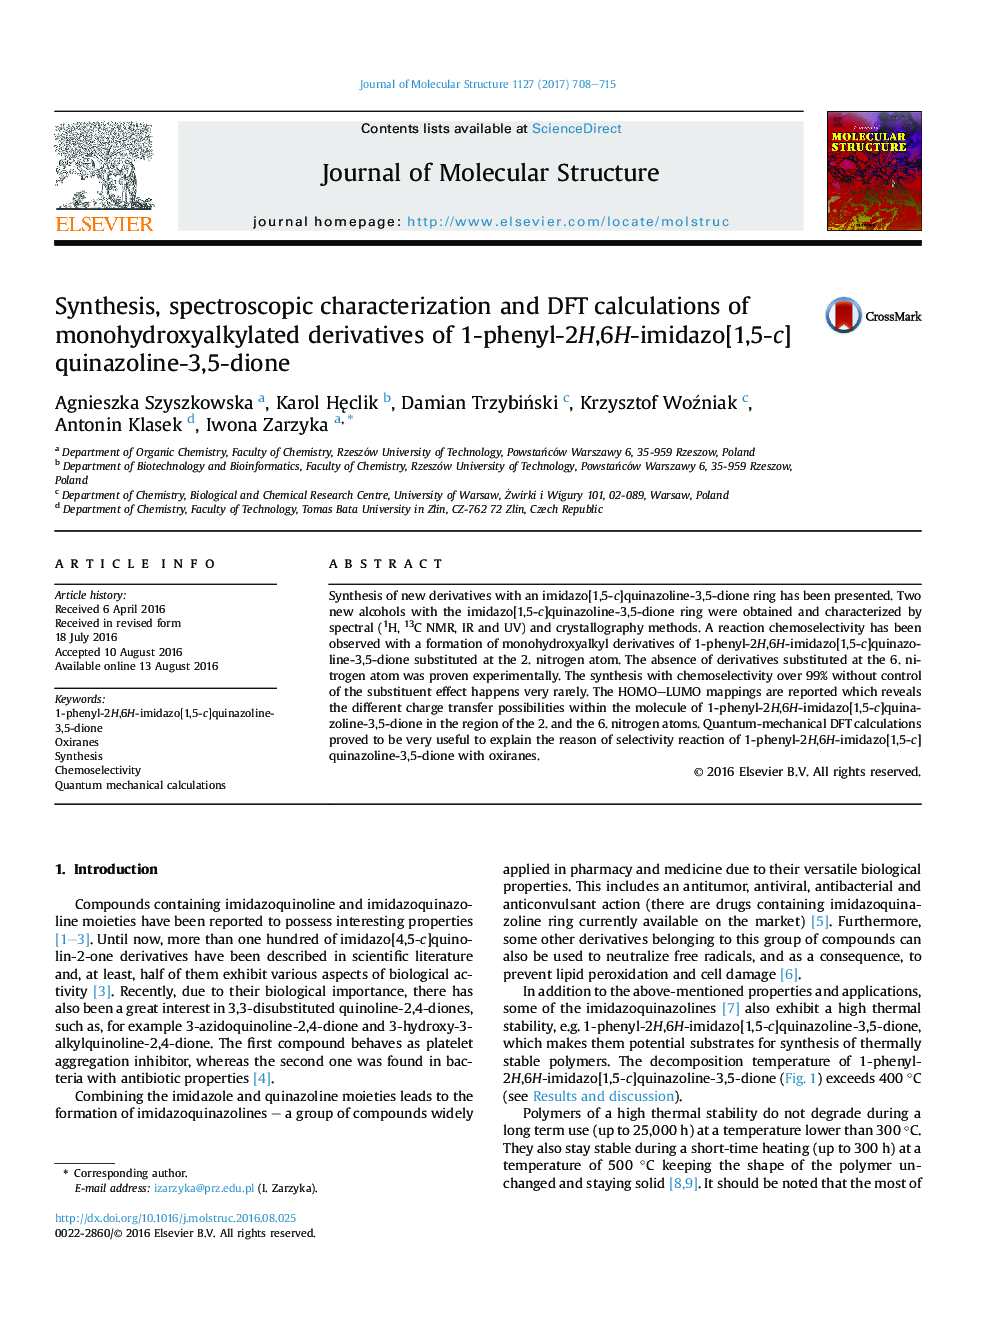 سنتز، شناسایی طیفی و محاسبات DFT از مشتقات monohydroxyalkylated از -phenyl-2H,6H-imidazo[1,5-c]quinazoline-3,5-dione